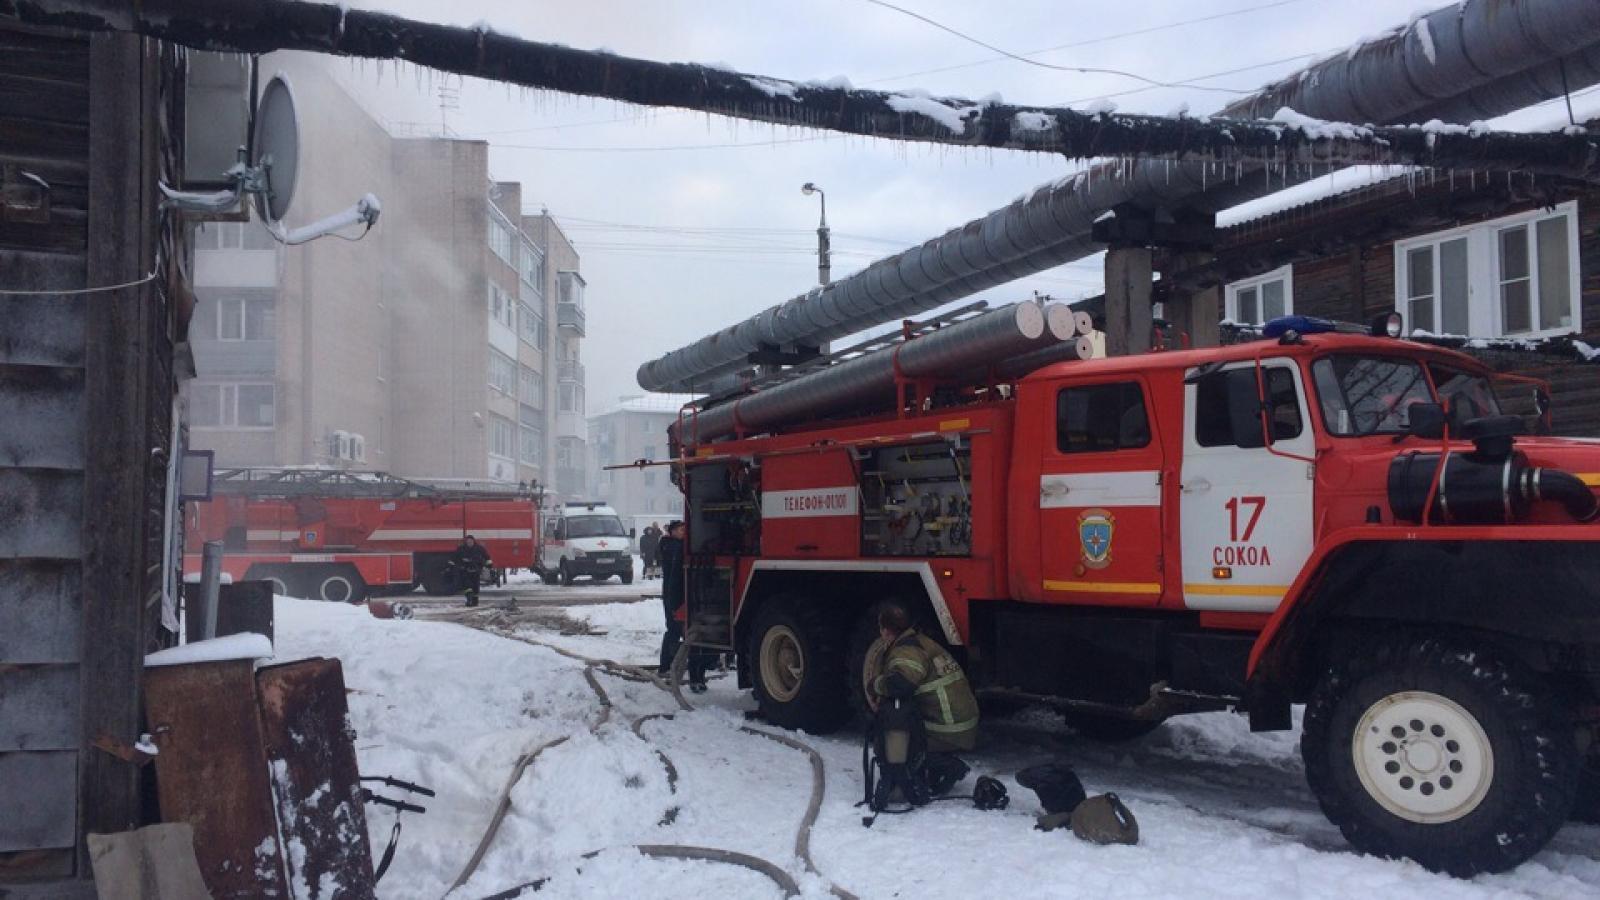 Пожар в Соколе: погибла женщина